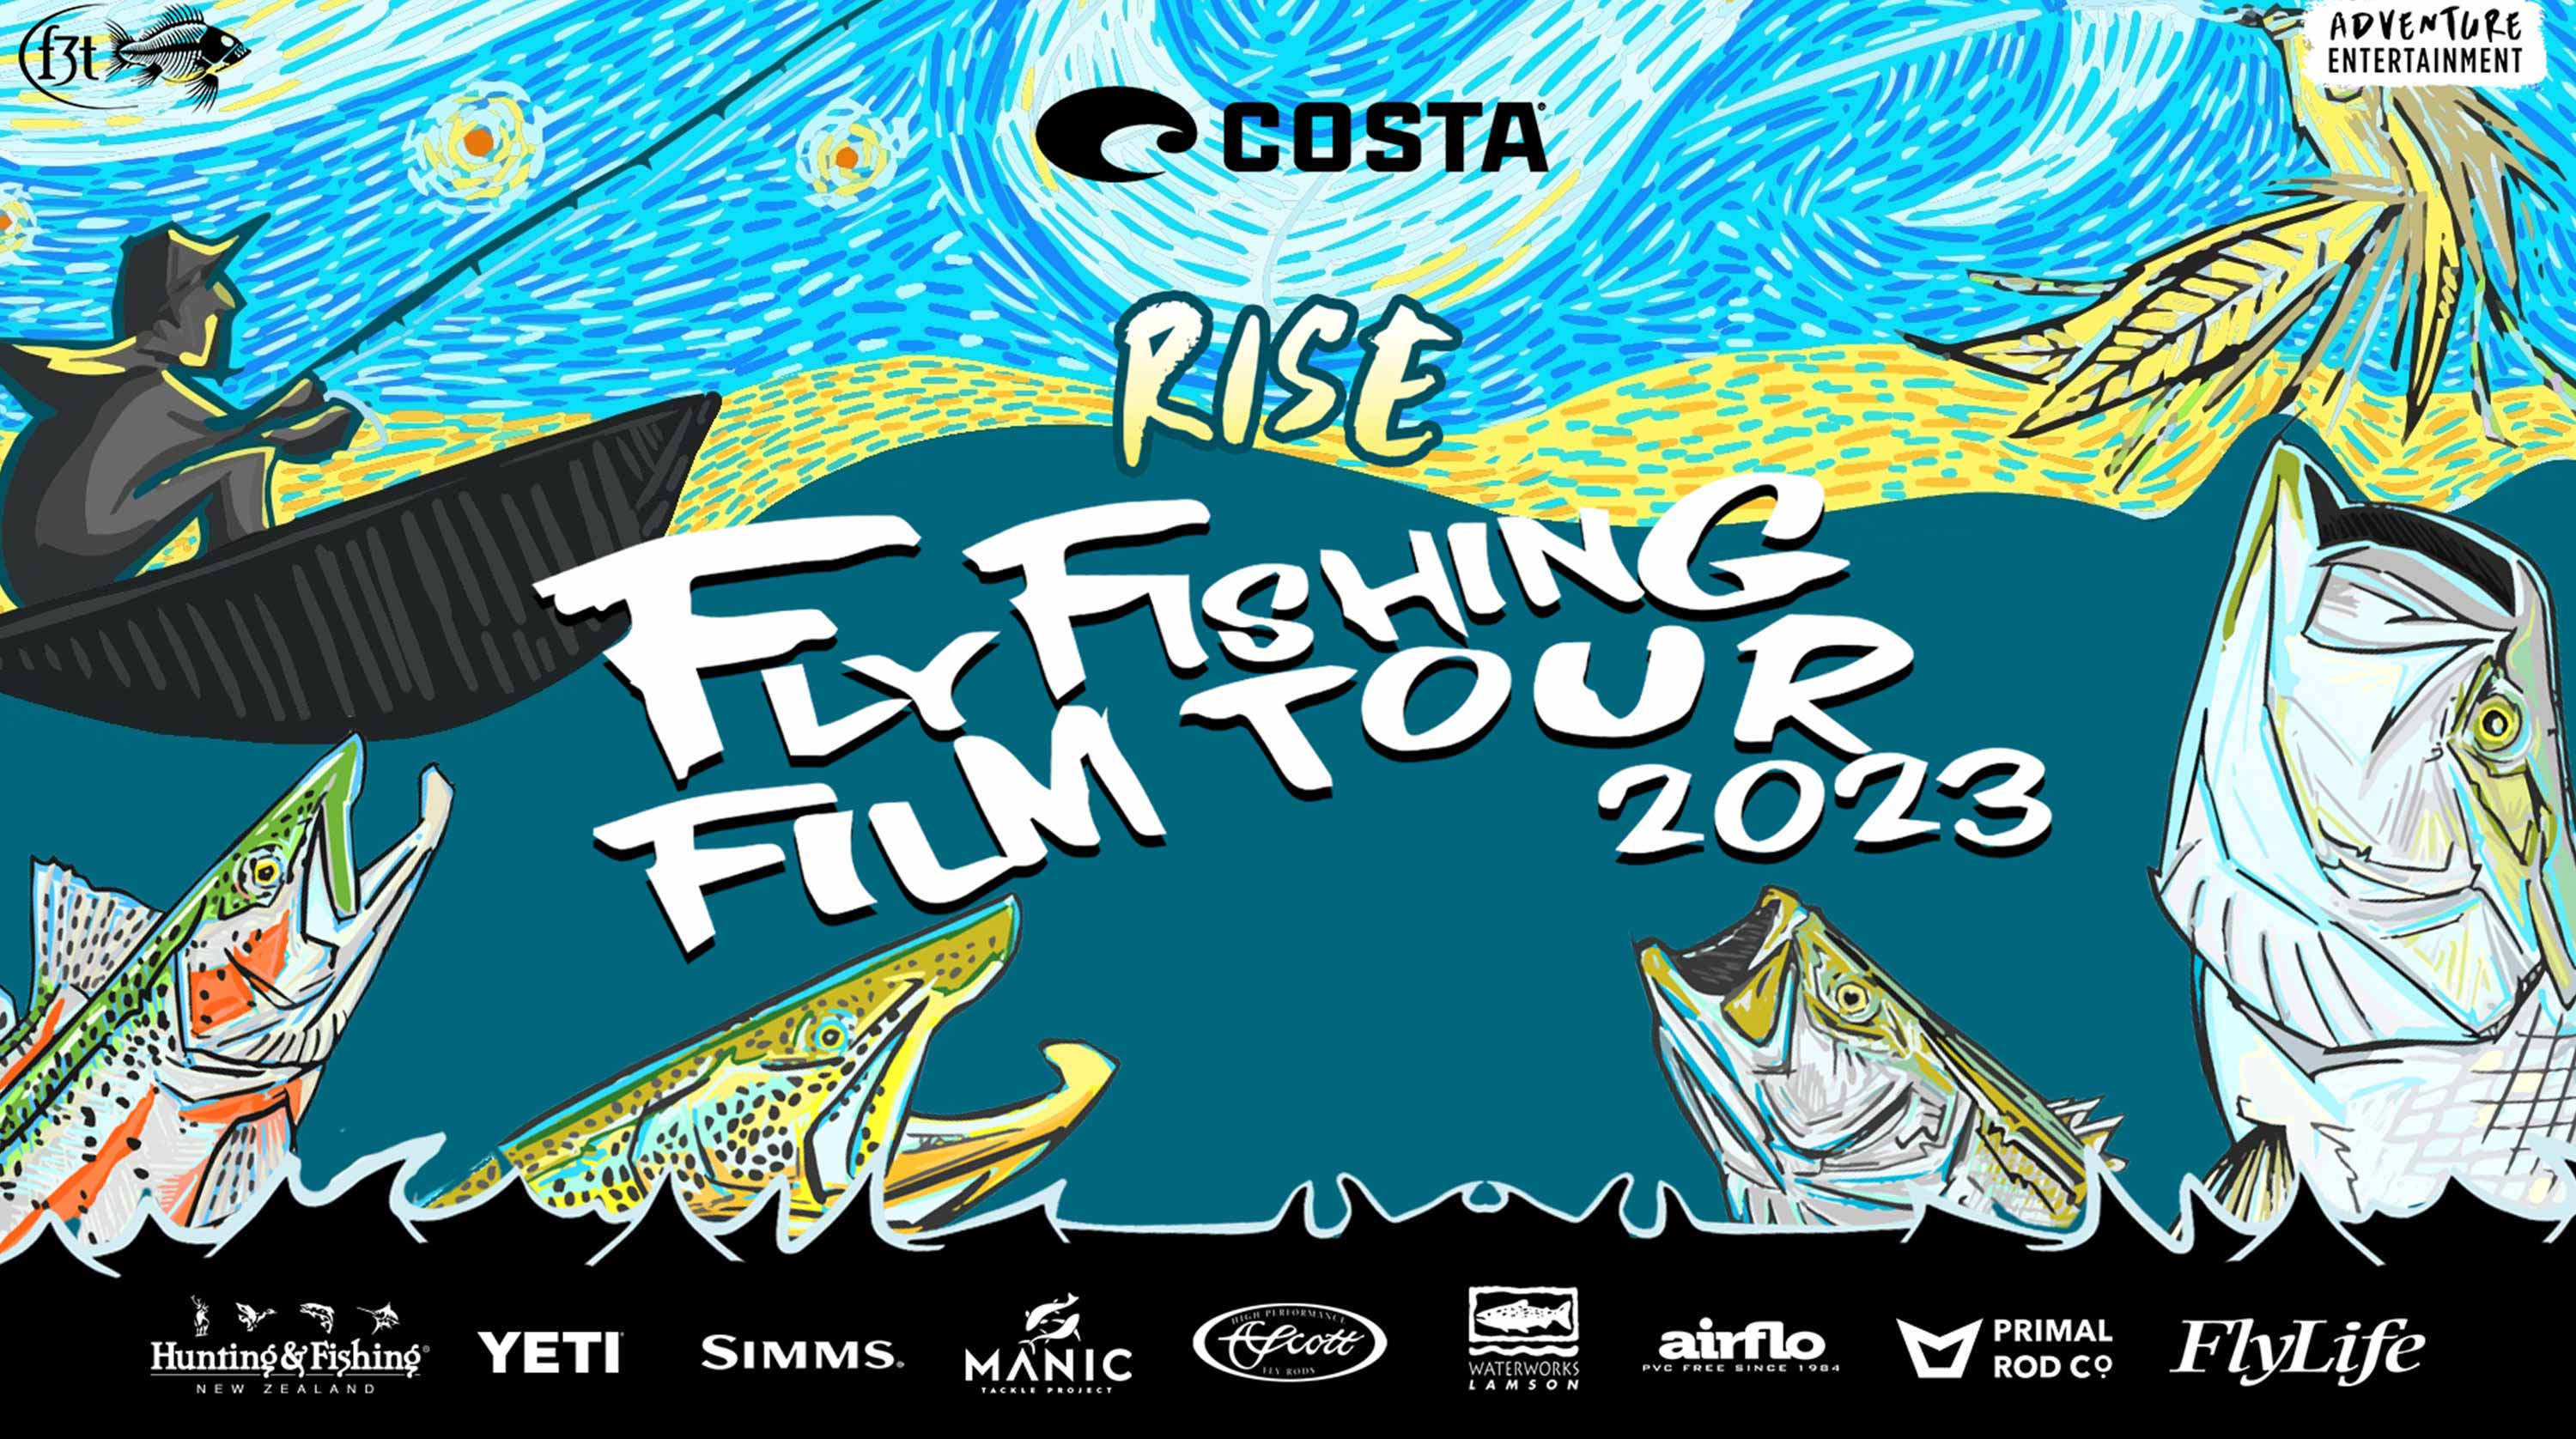 Fishing Gear - Fly Rise Fishing